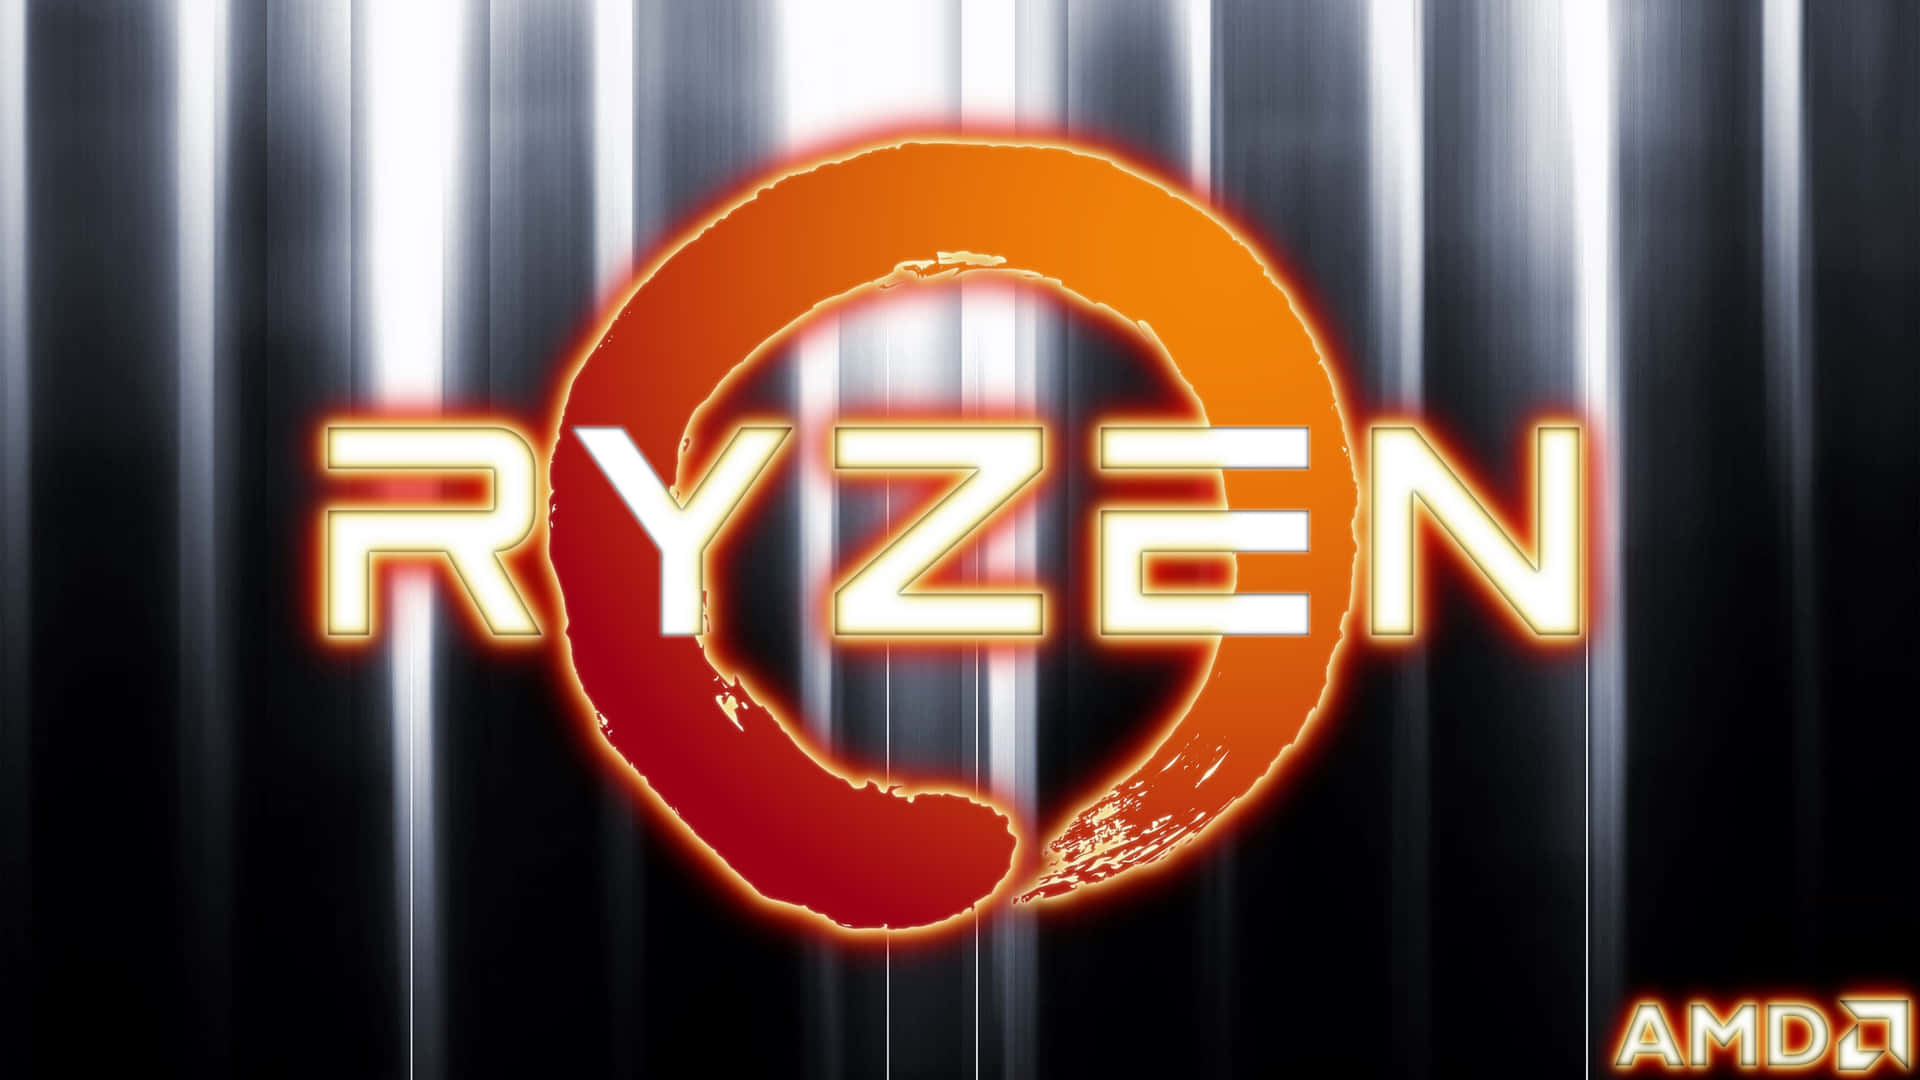 A M D Ryzen Logo Background Wallpaper